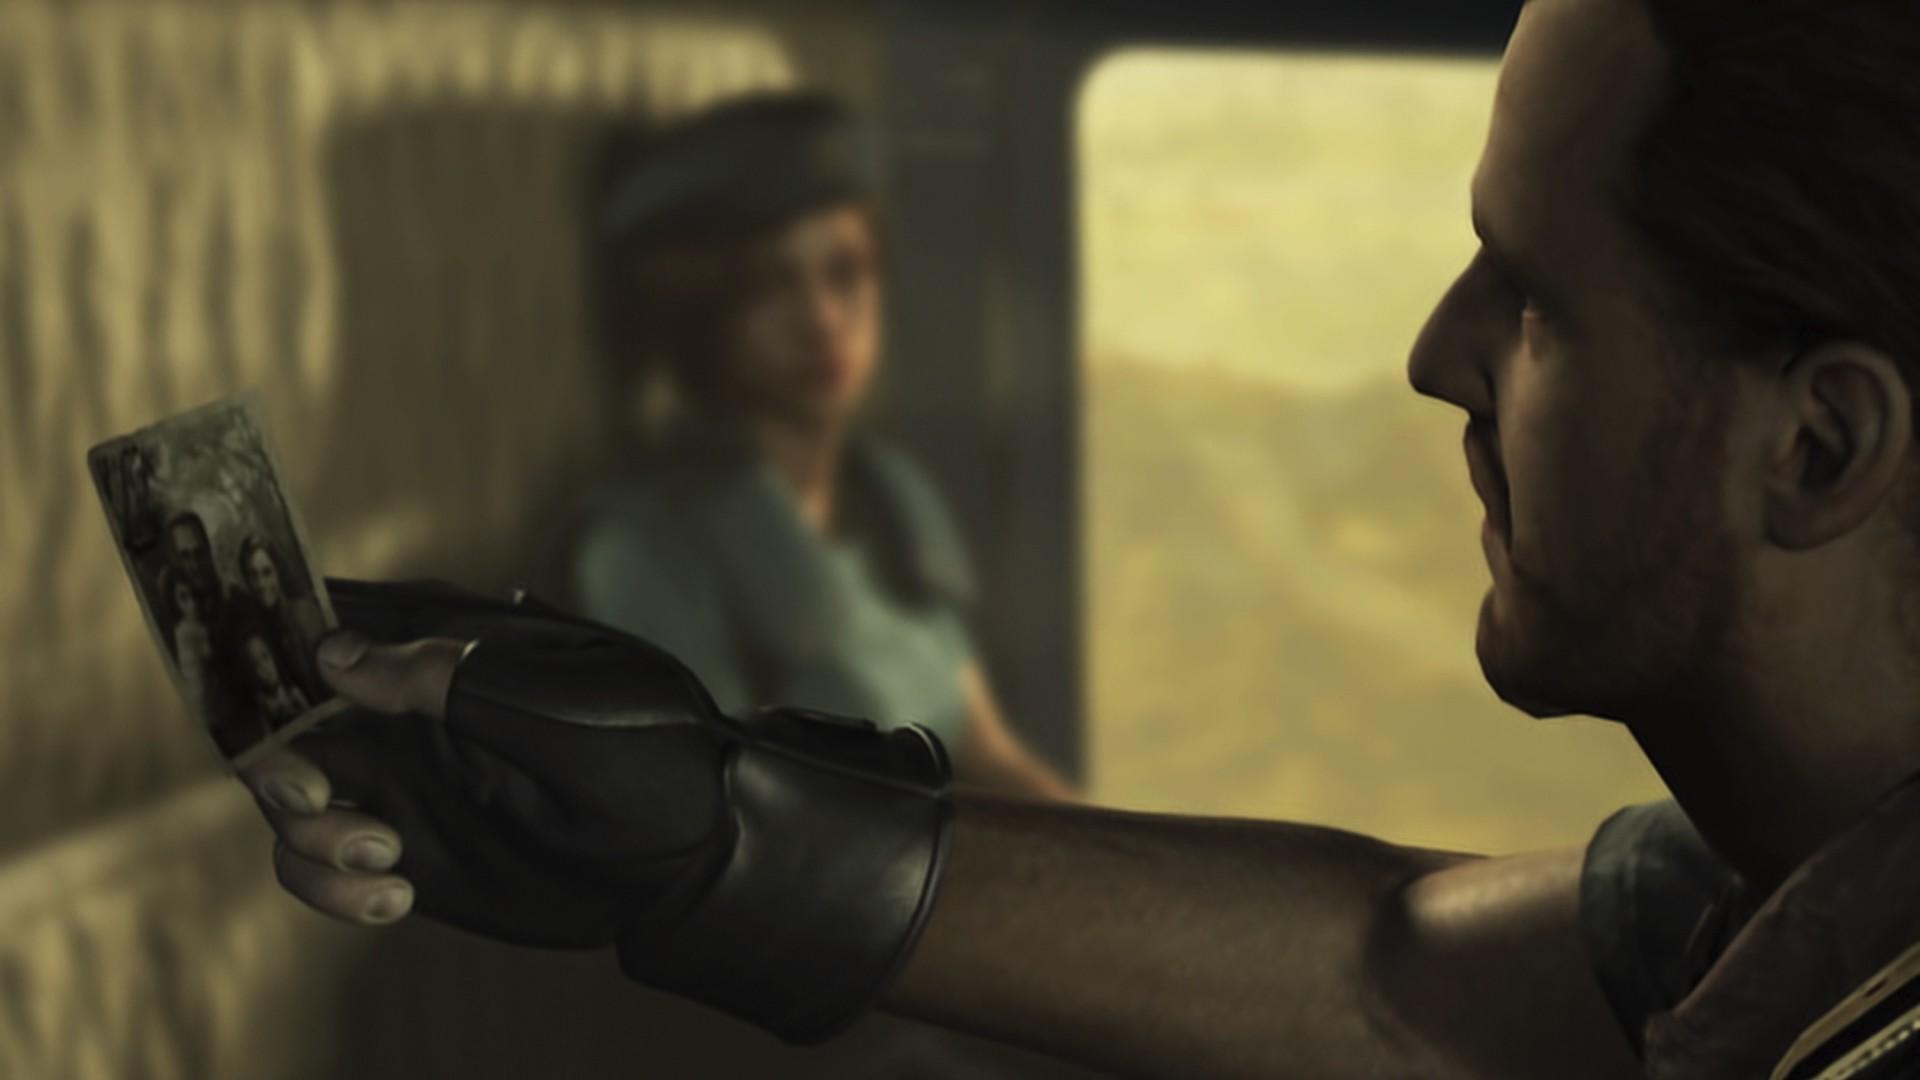 Resident Evil screenshot game